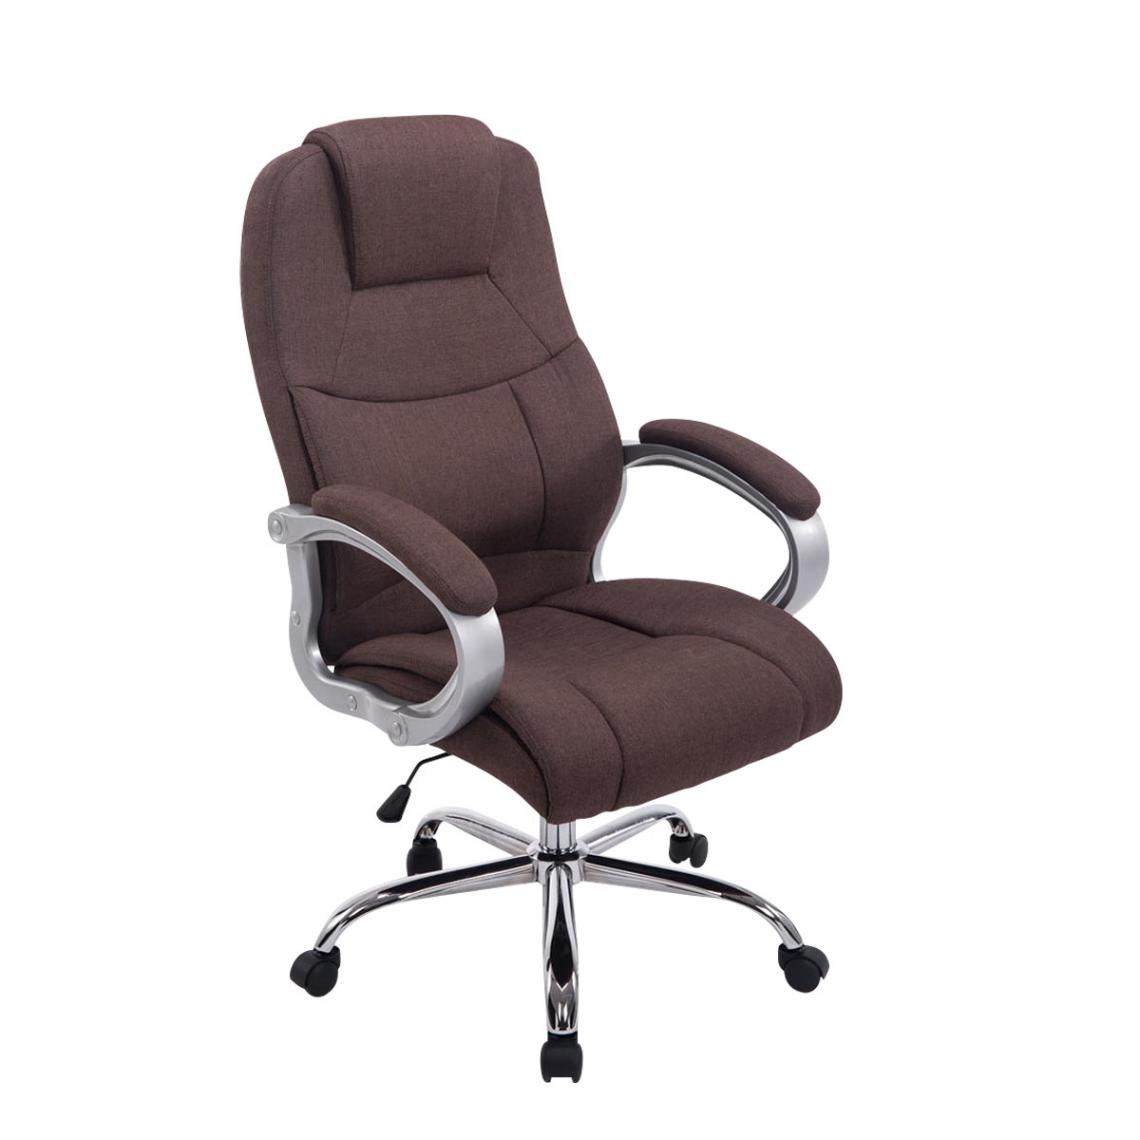 Icaverne - Superbe Chaise de bureau famille Budapest Apoll en tissu couleur marron - Chaises